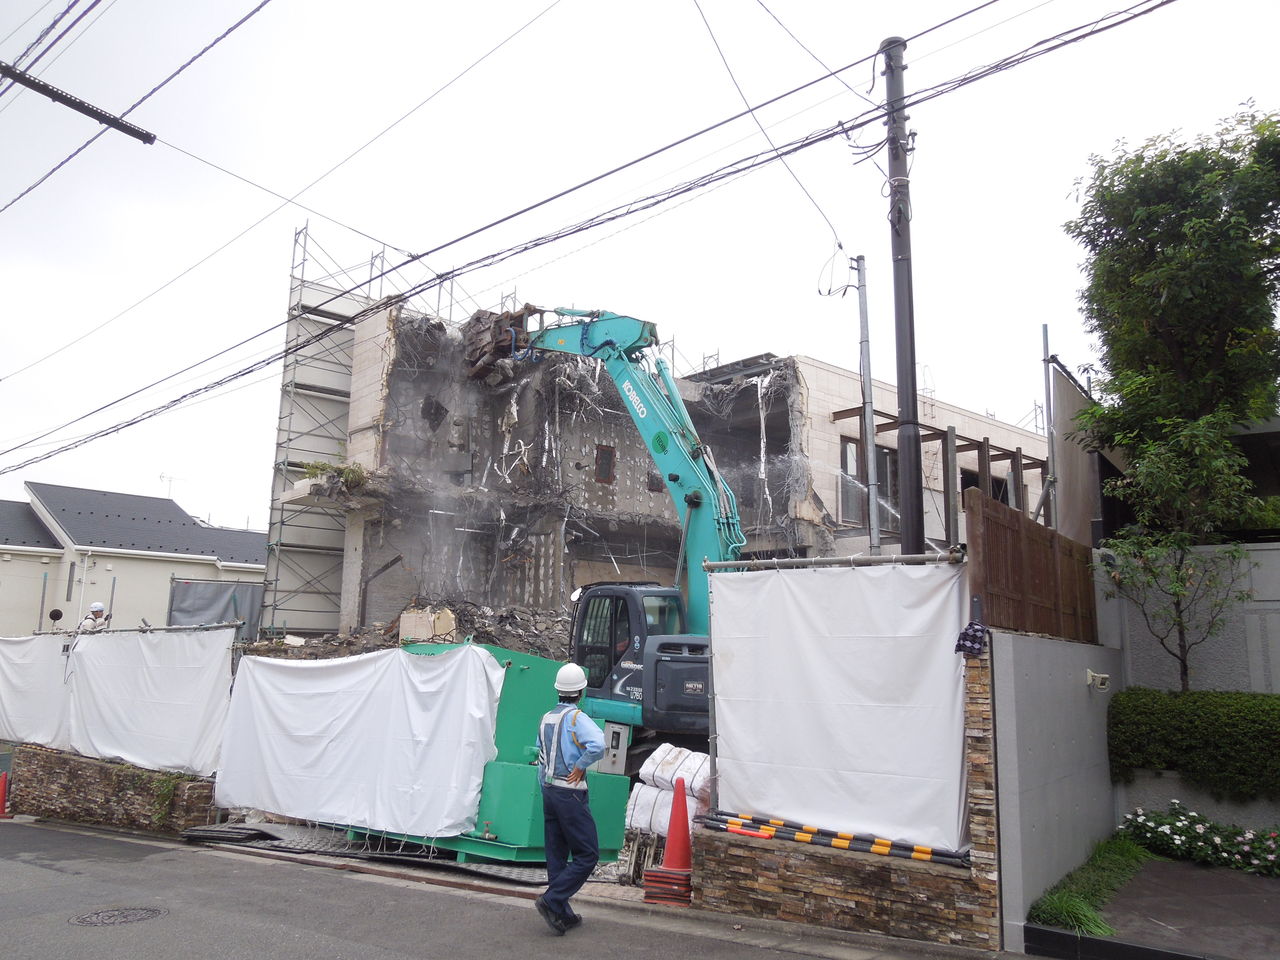 田園調布にあるミスチルの桜井和寿さんの自宅が解体中でした 東京都内の豪邸探索ブログ